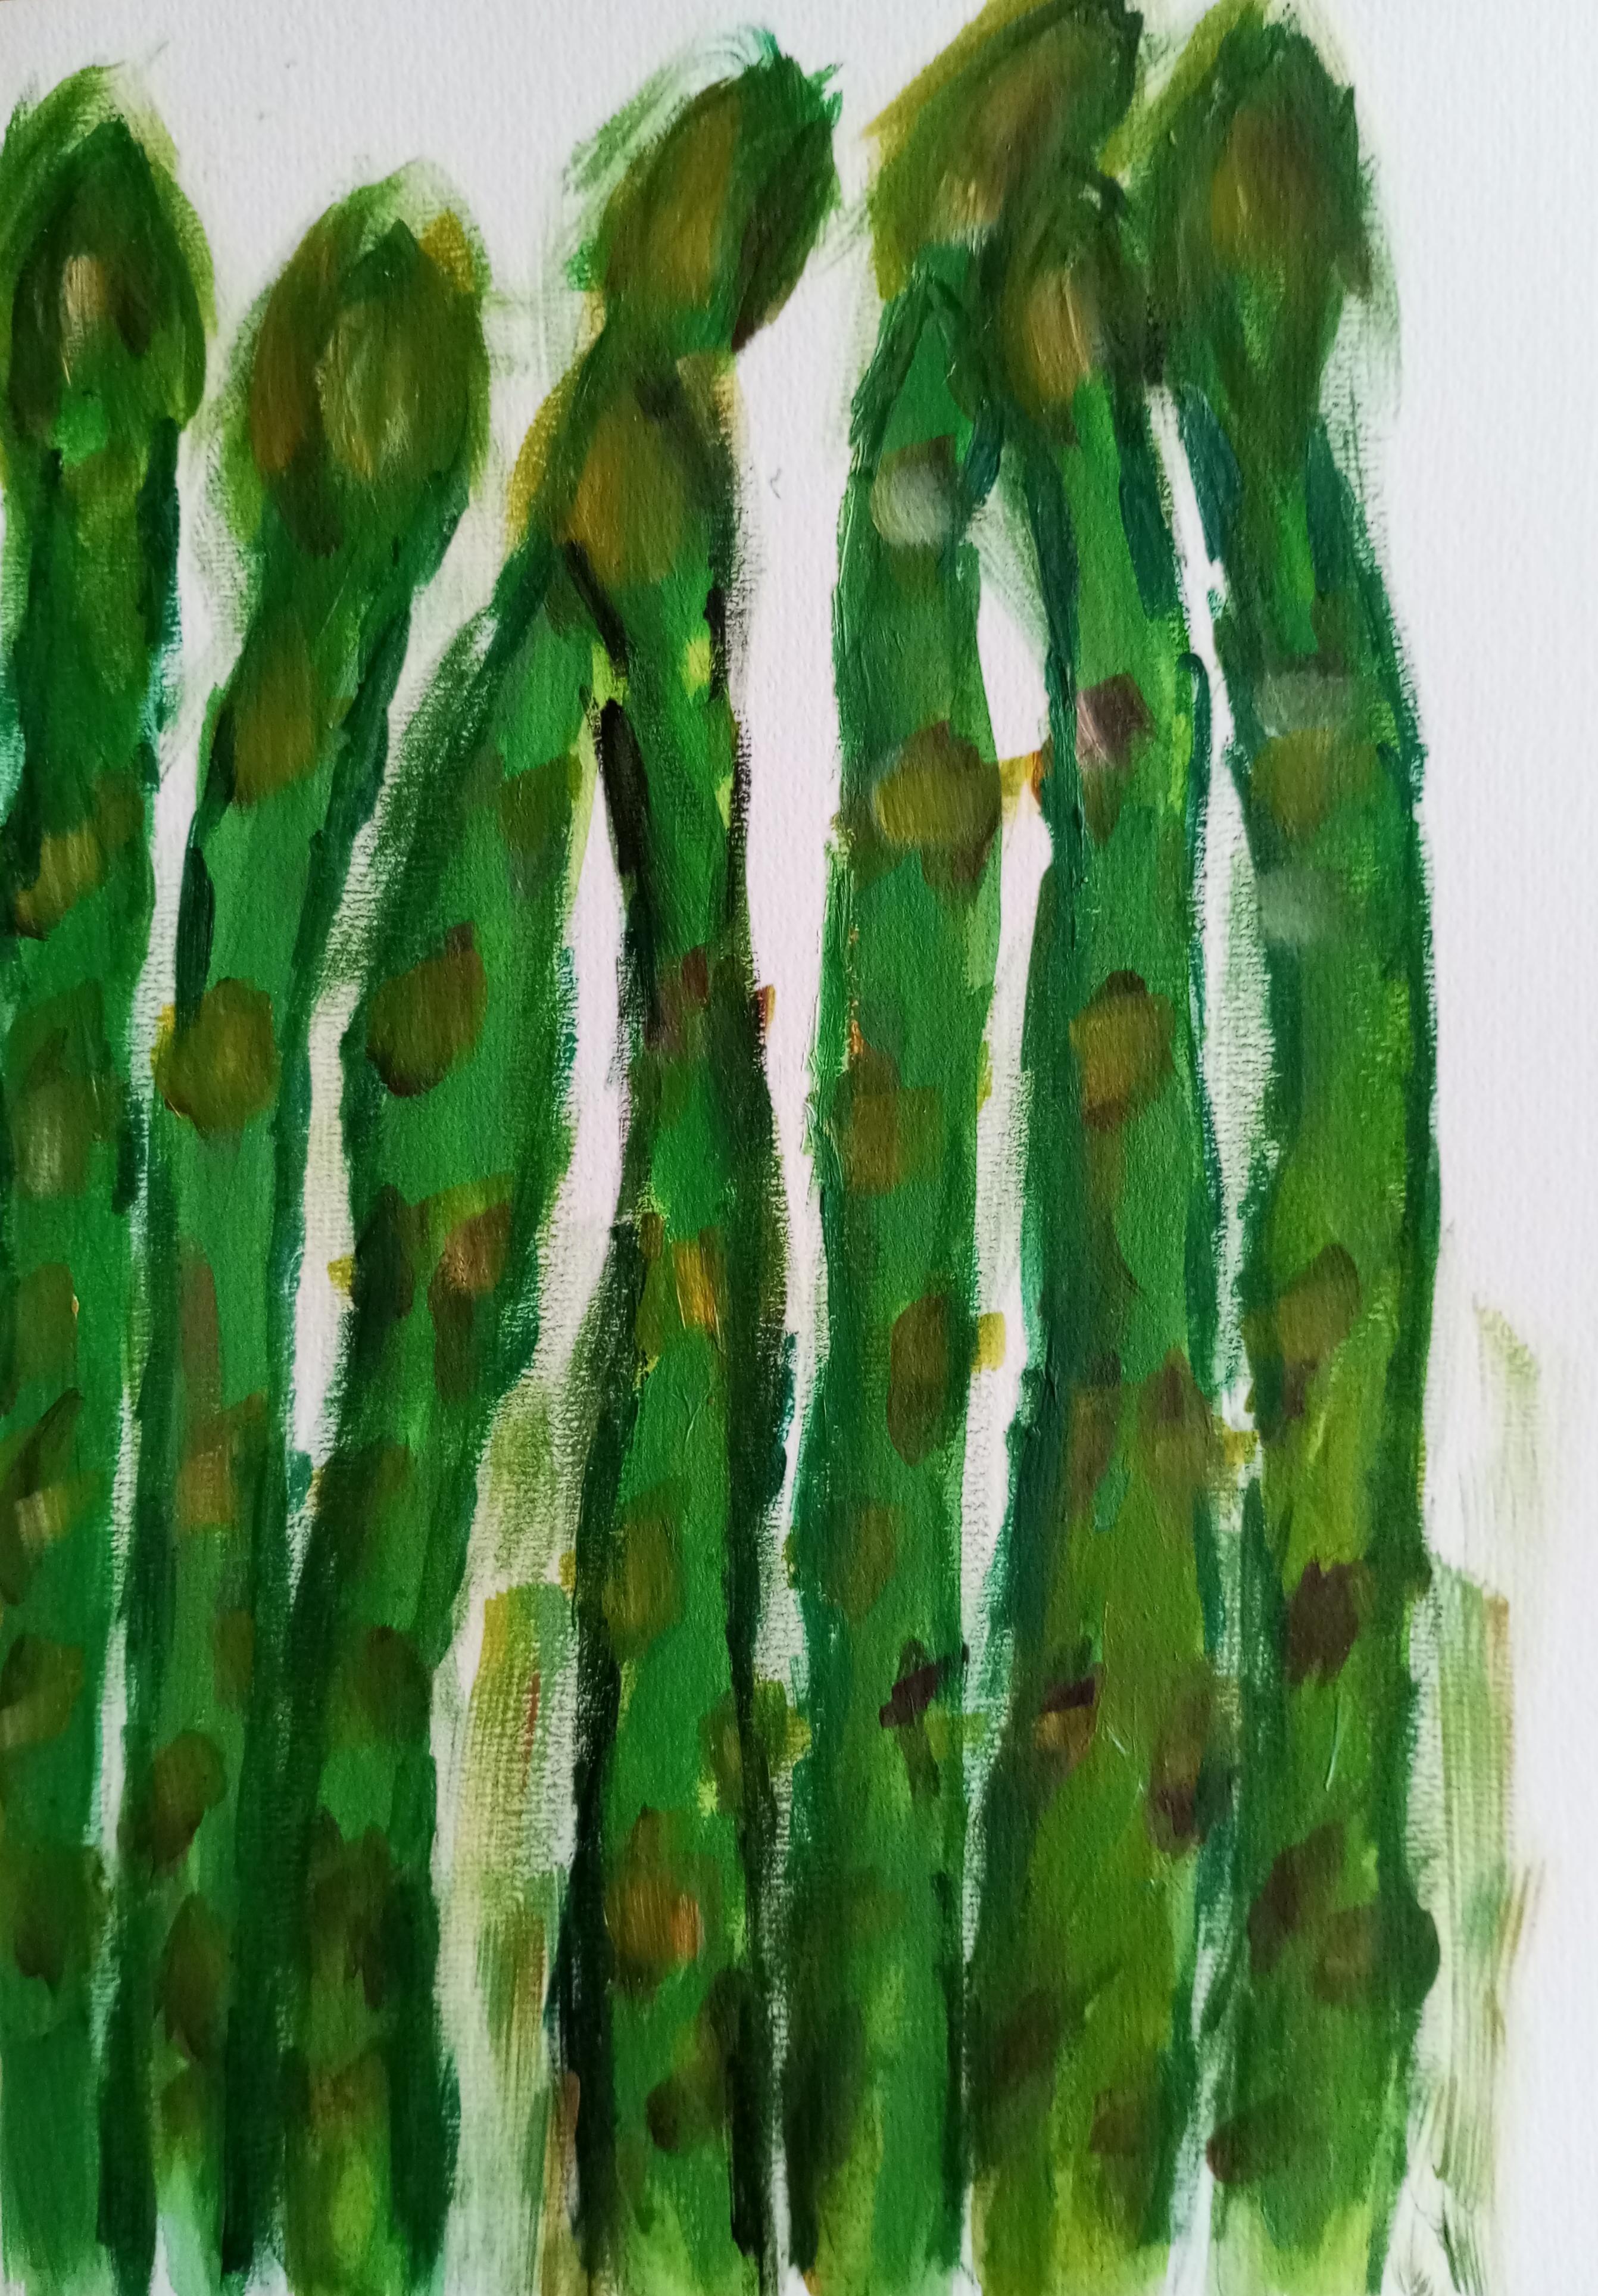 "Spring green asparagus" - Art by Natalya Mougenot 